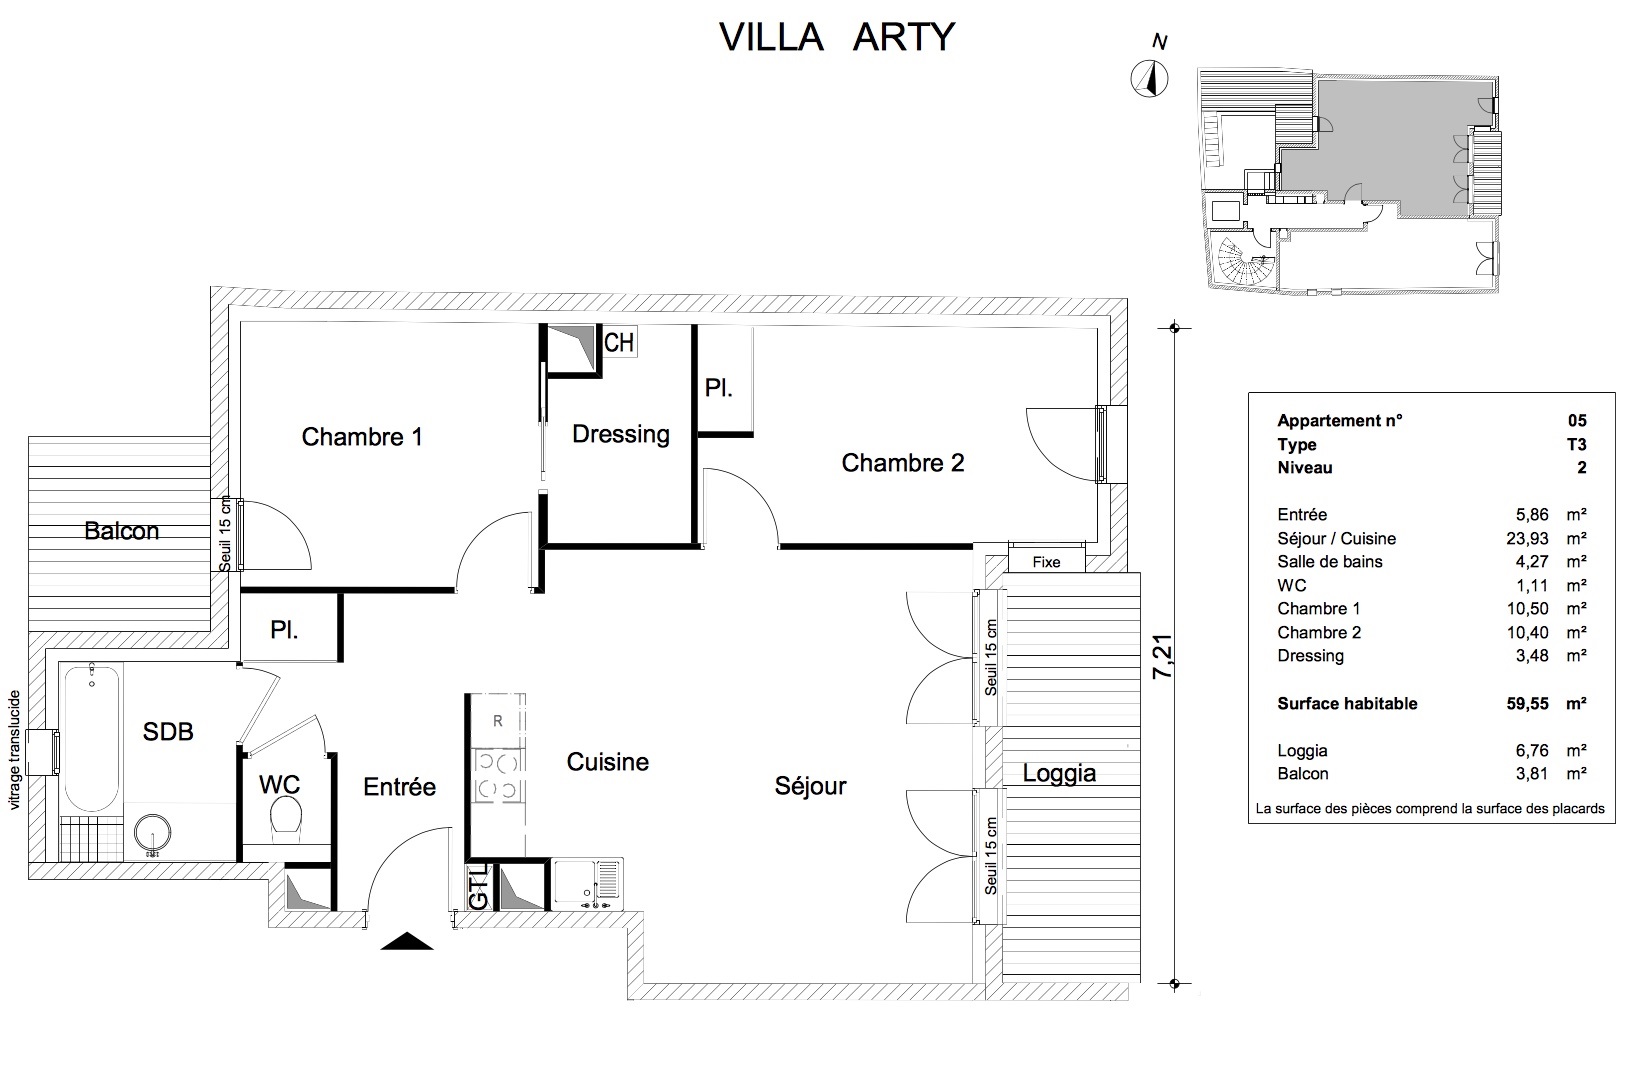 T3 - 59,55 m² - 2ème étage - Loggia 6,76 m² - Balcon 3,81 m² - Documentation - VENDU